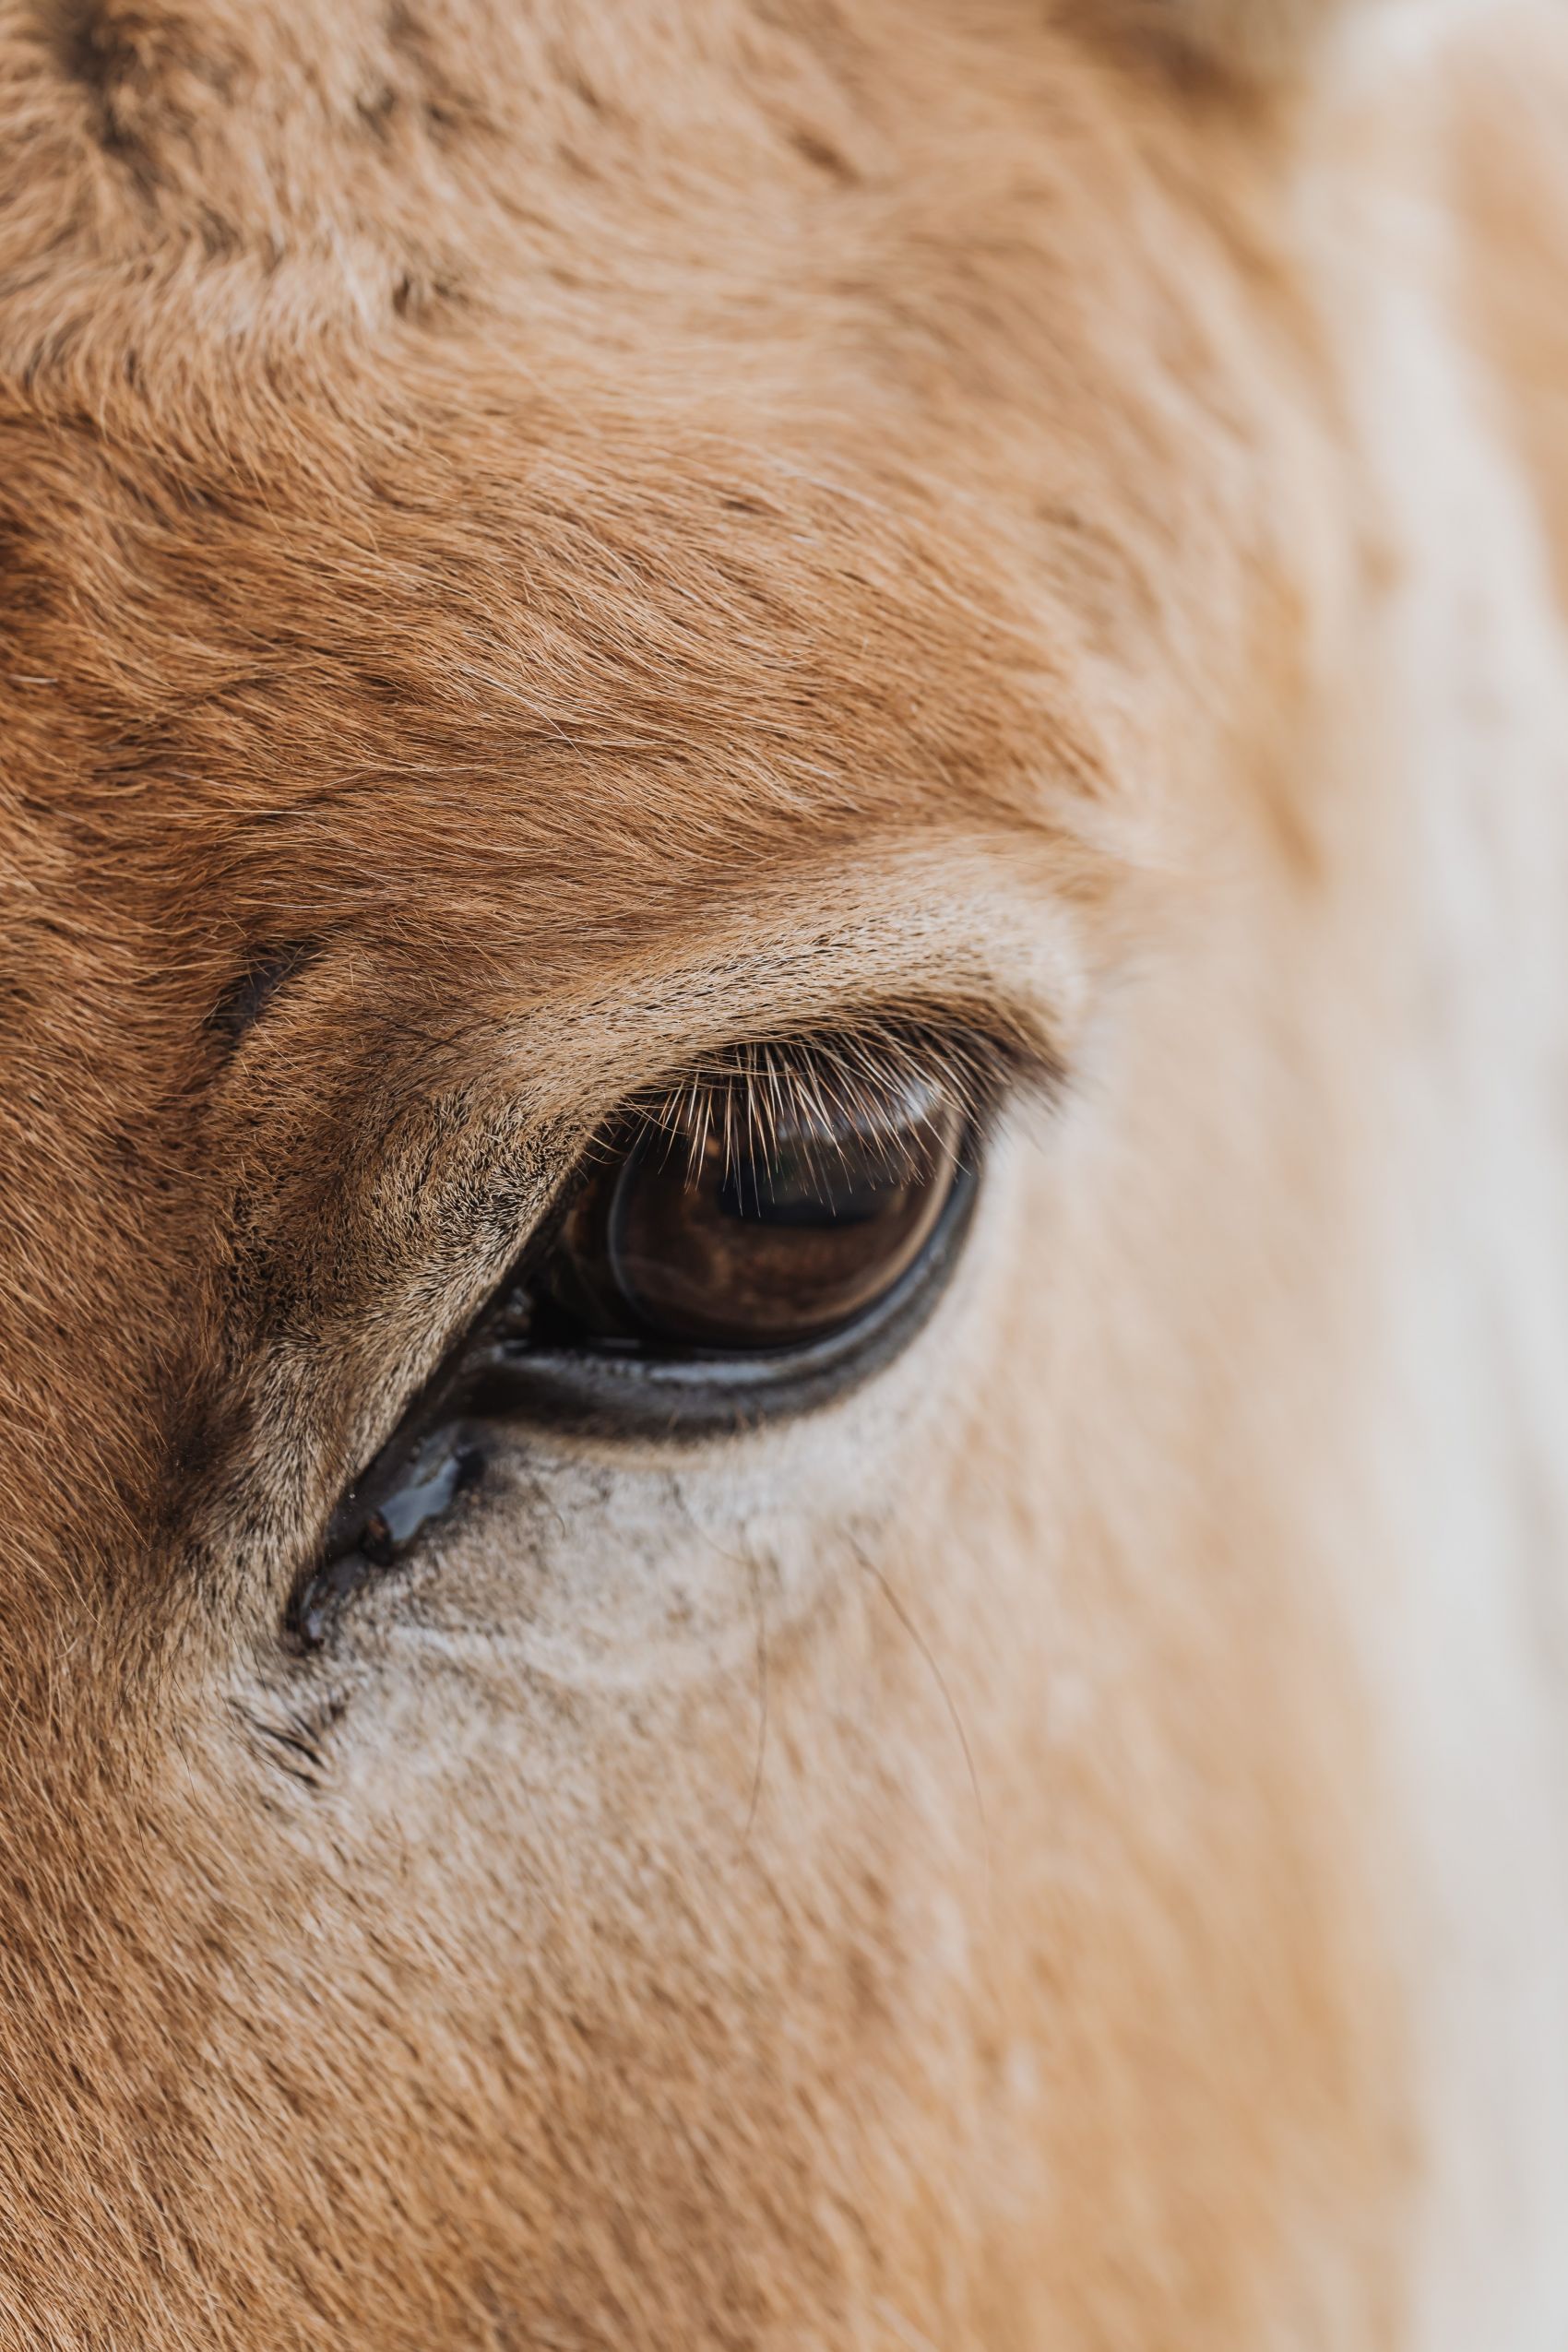 马的眼睛 免费下载照片 | FreeImages